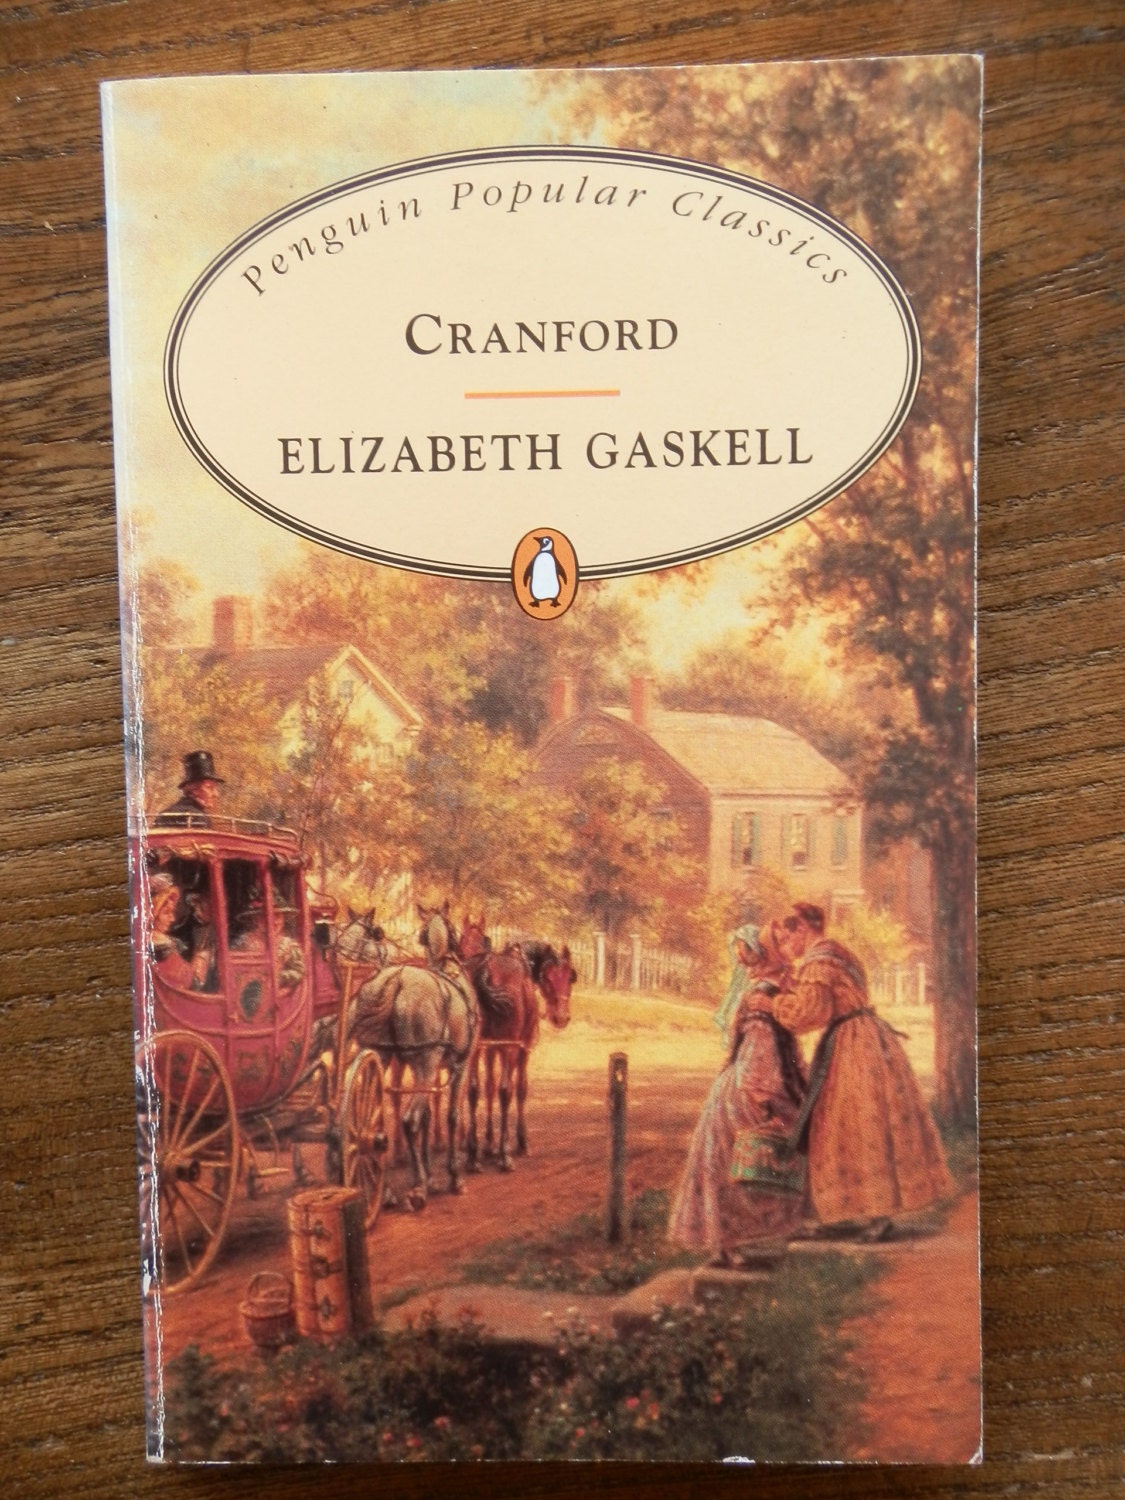 cranford author elizabeth